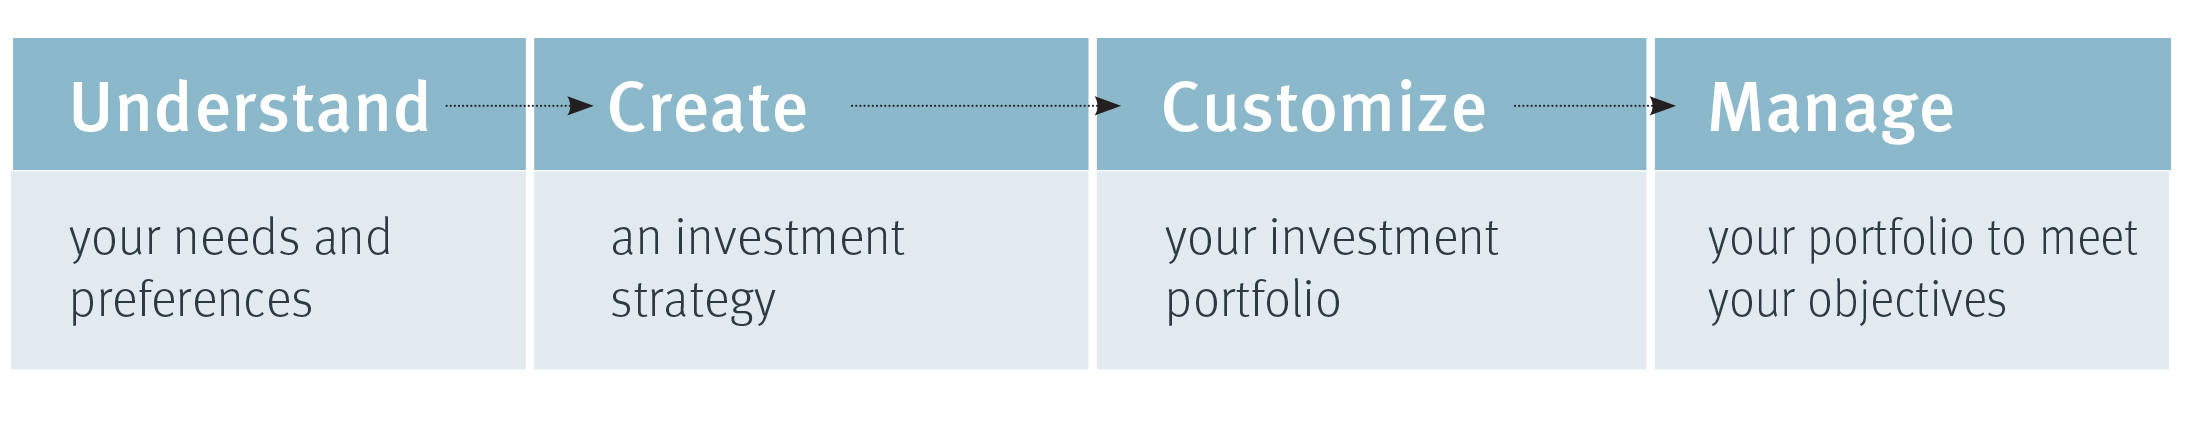 Creating a portfolio steps